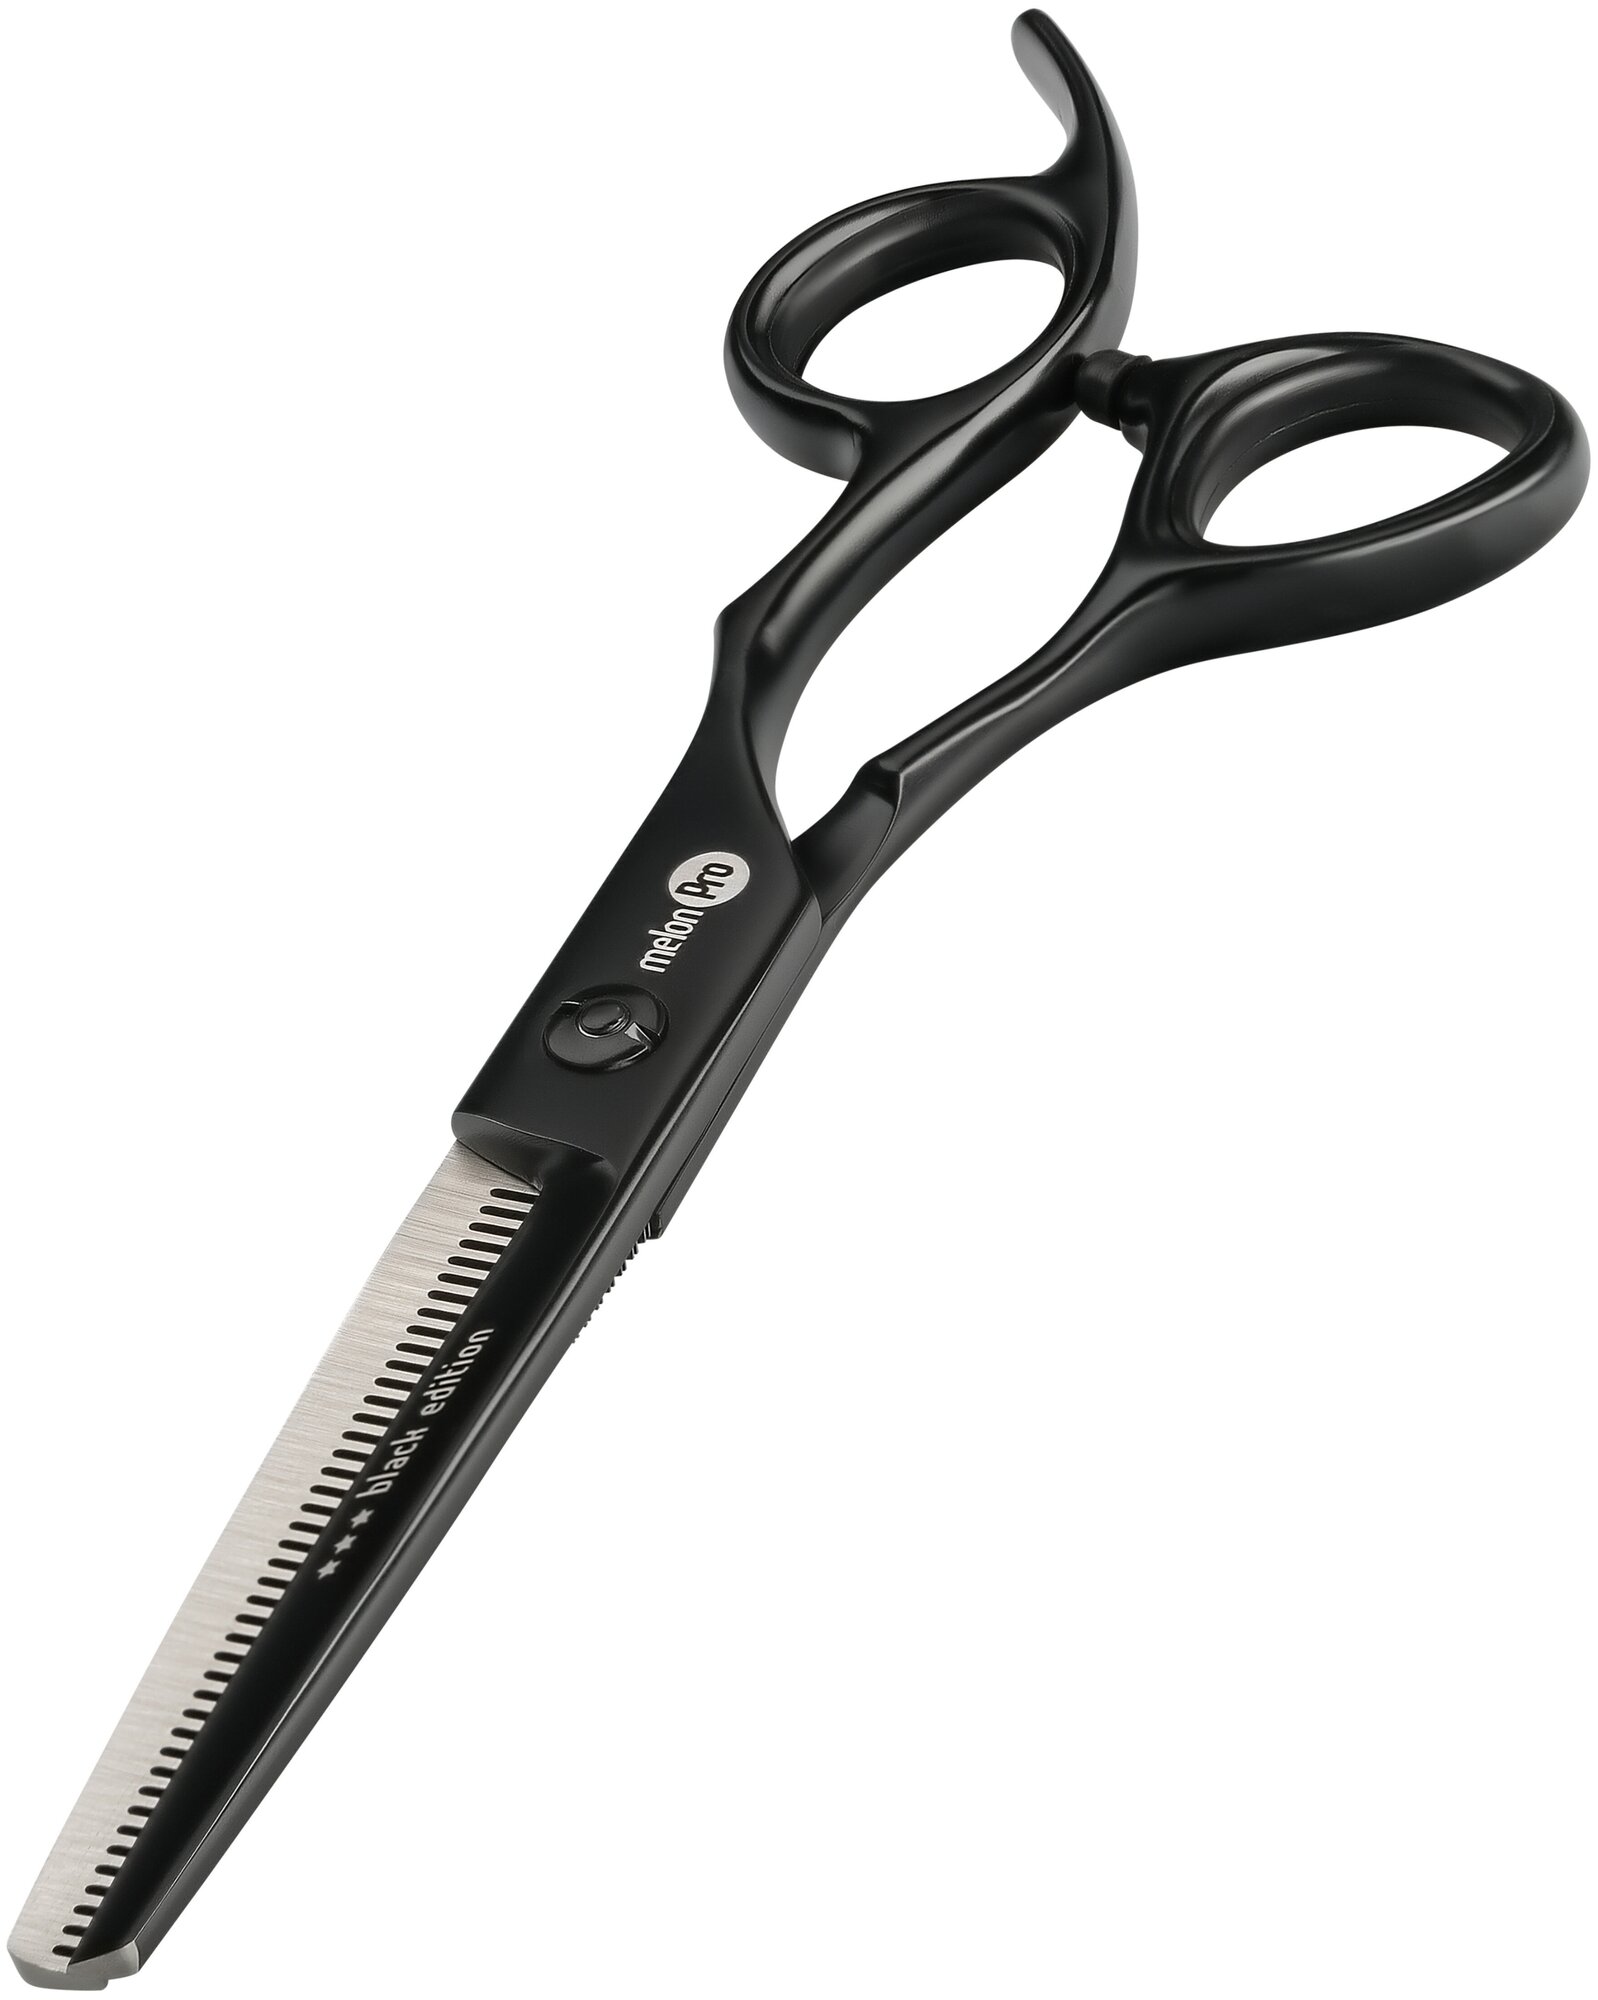 Melon Pro 6.0" ножницы парикмахерские филировочные эргономичные 42 зубьев Black Edition